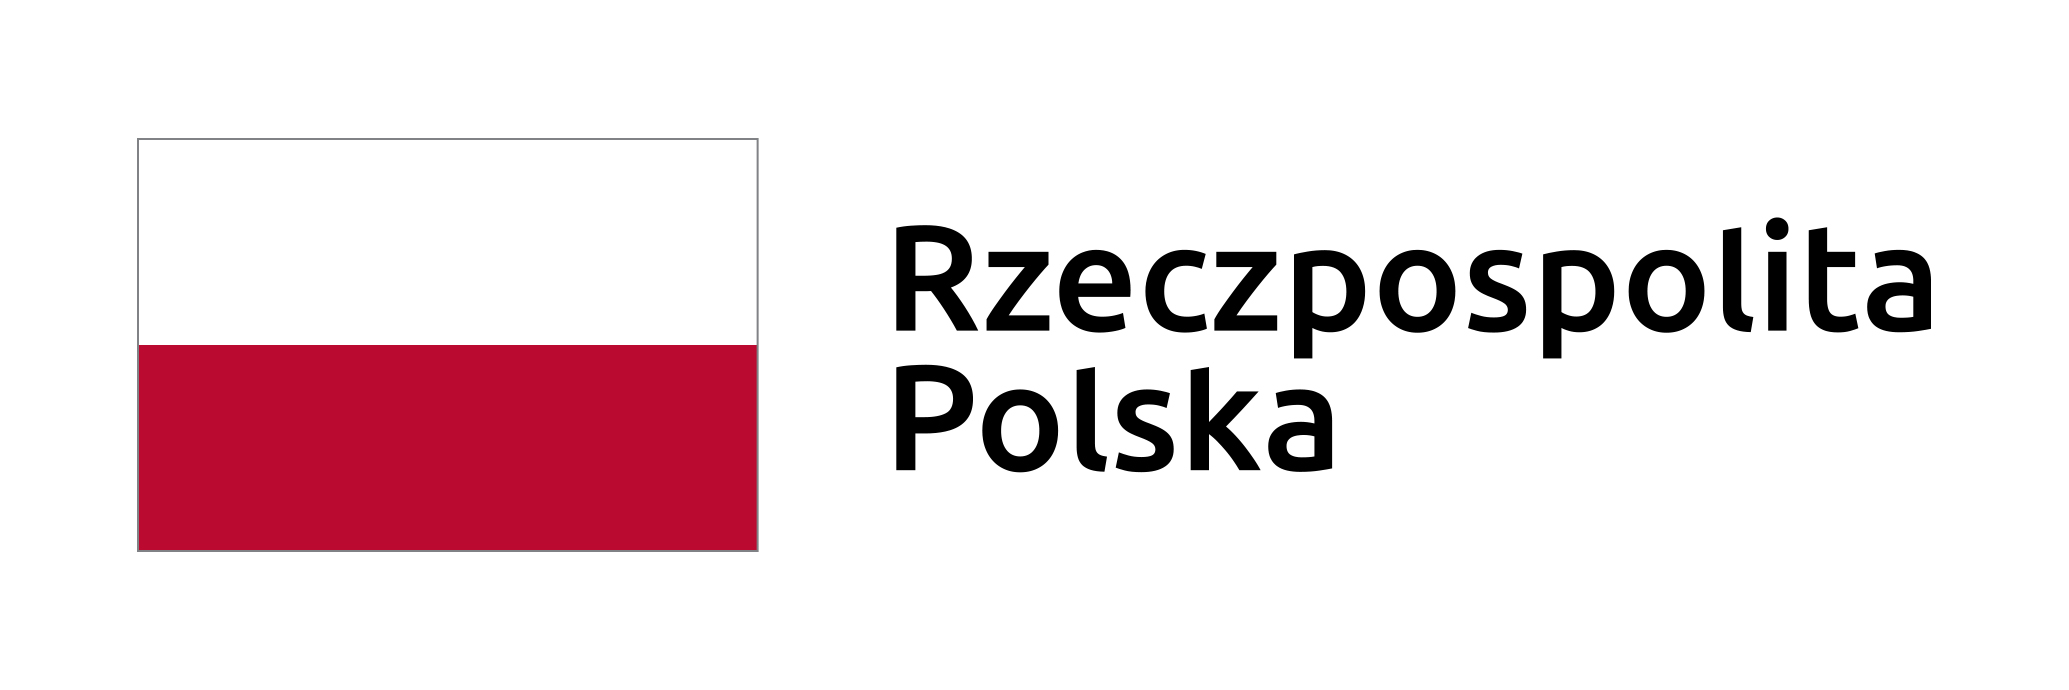 Flaga Polski z podpisem Rzeczpospolita Polska